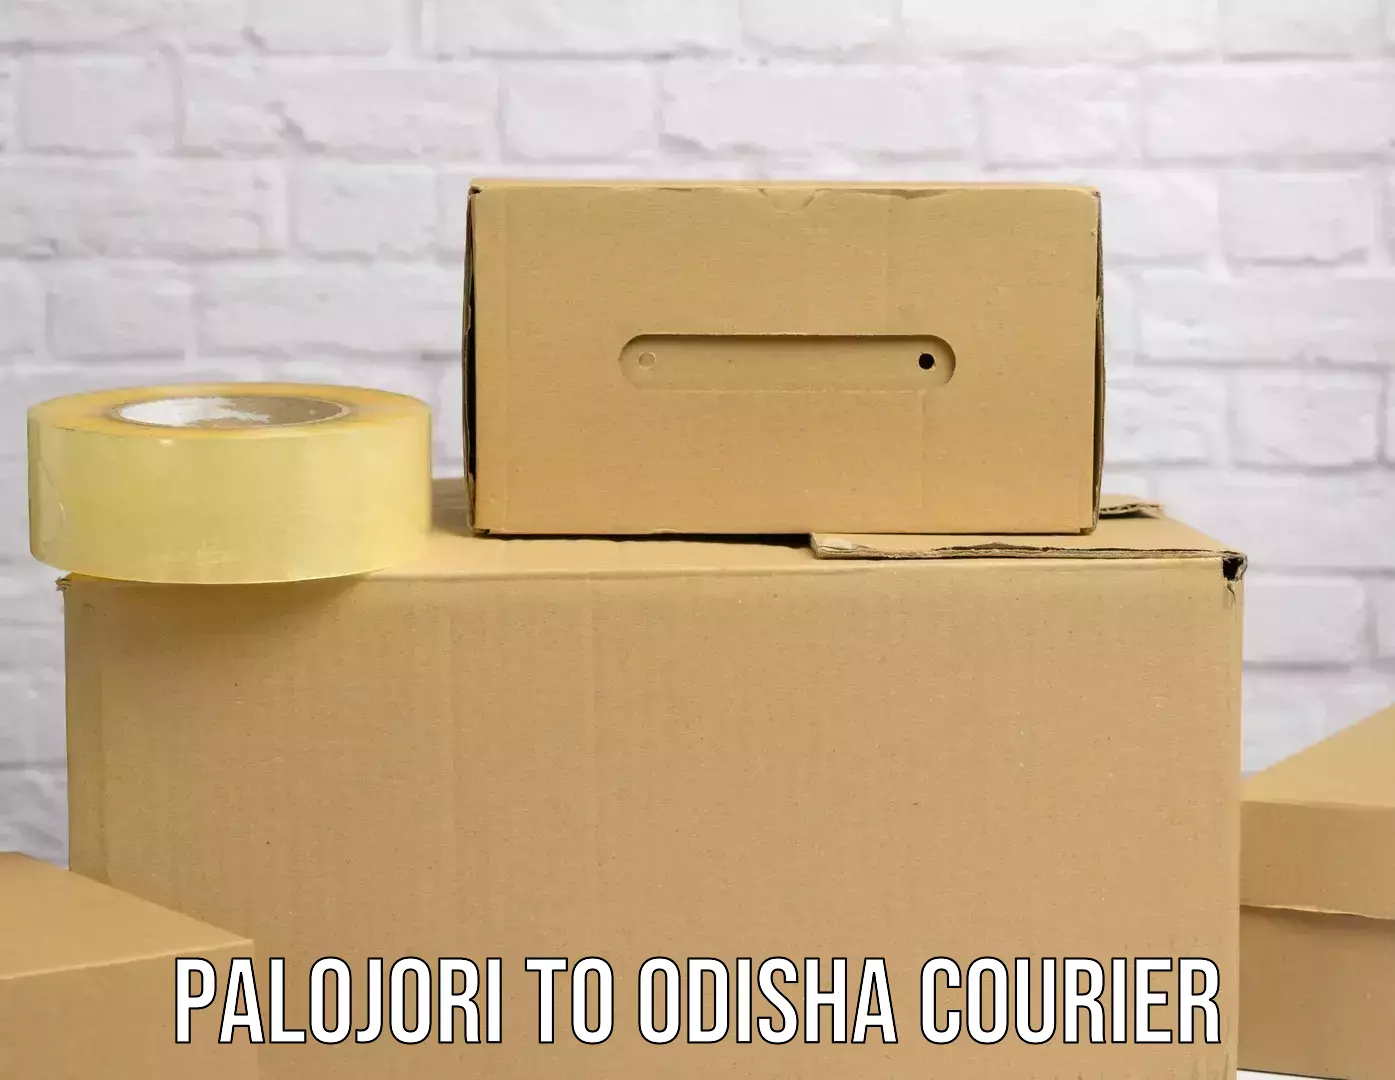 Logistics service provider Palojori to Odisha